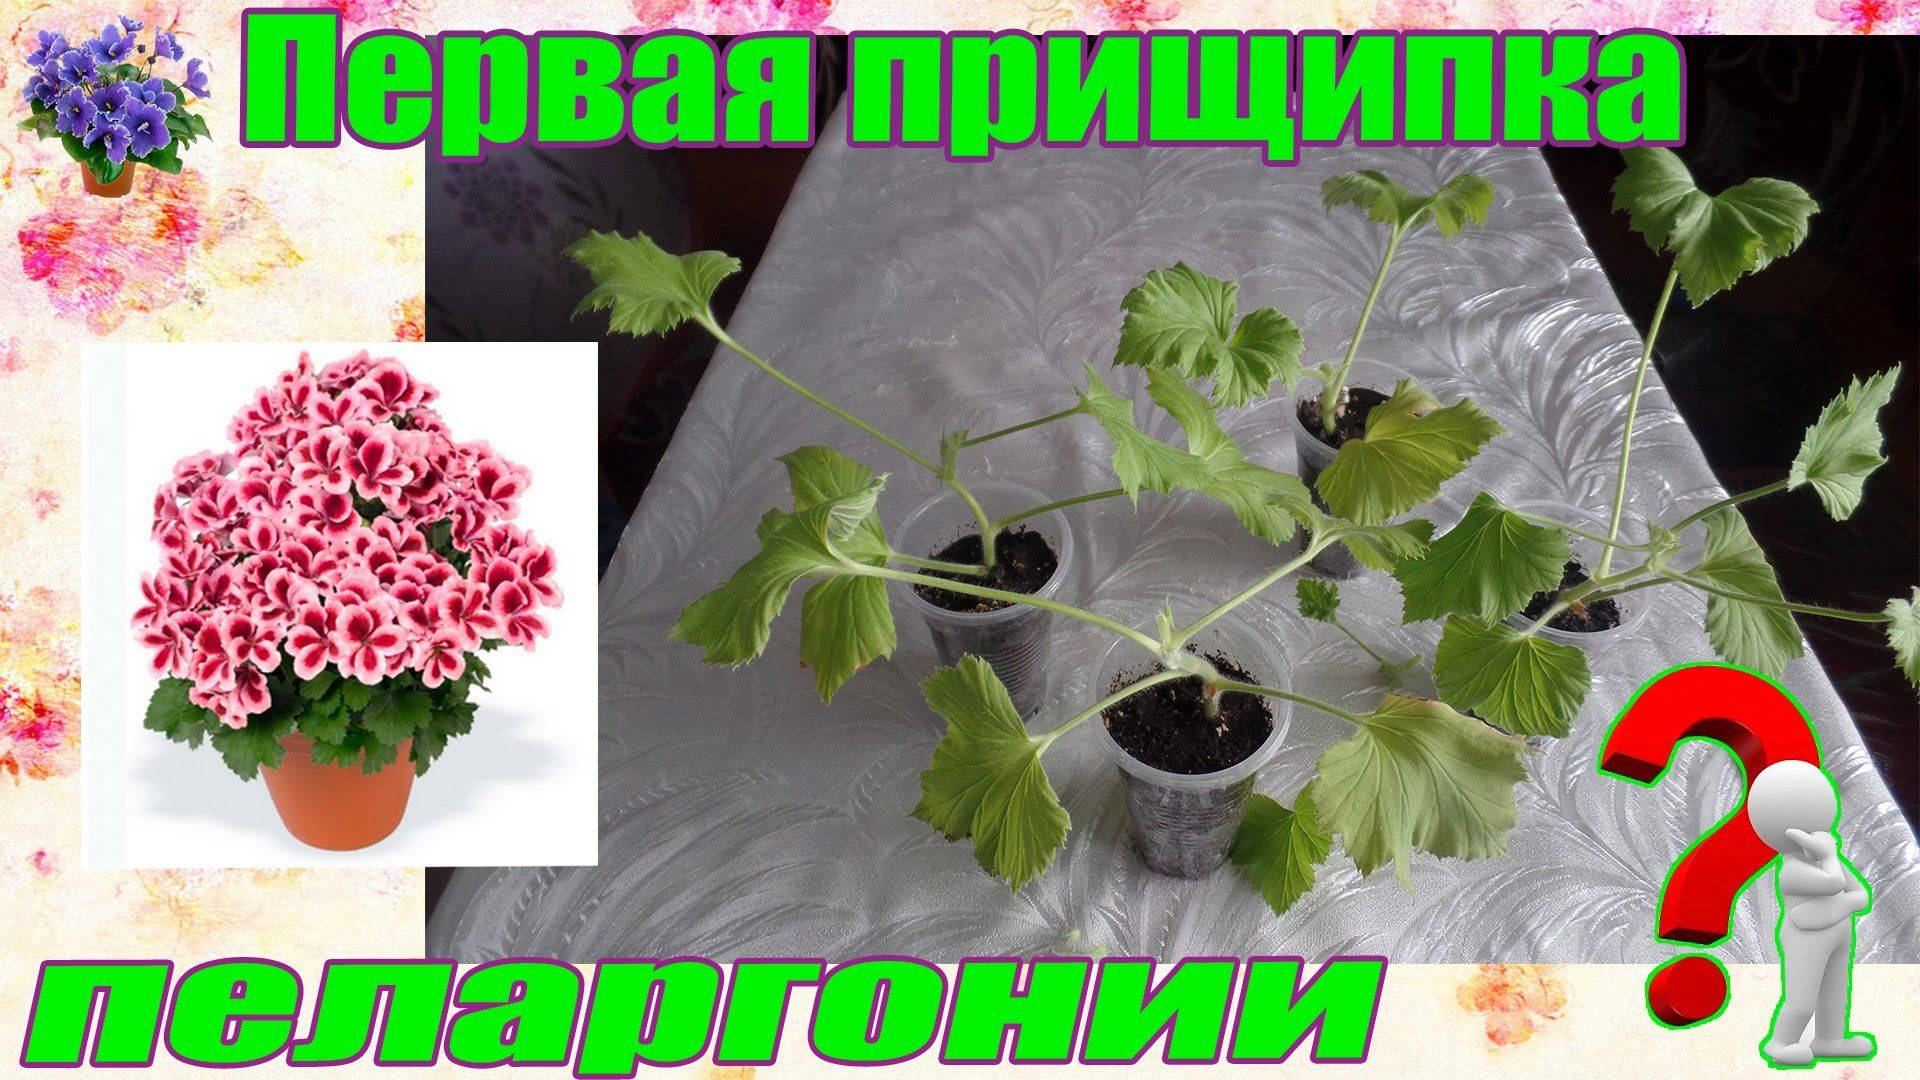 Пеларгония зональная: как выращивать в саду, сорта и фото